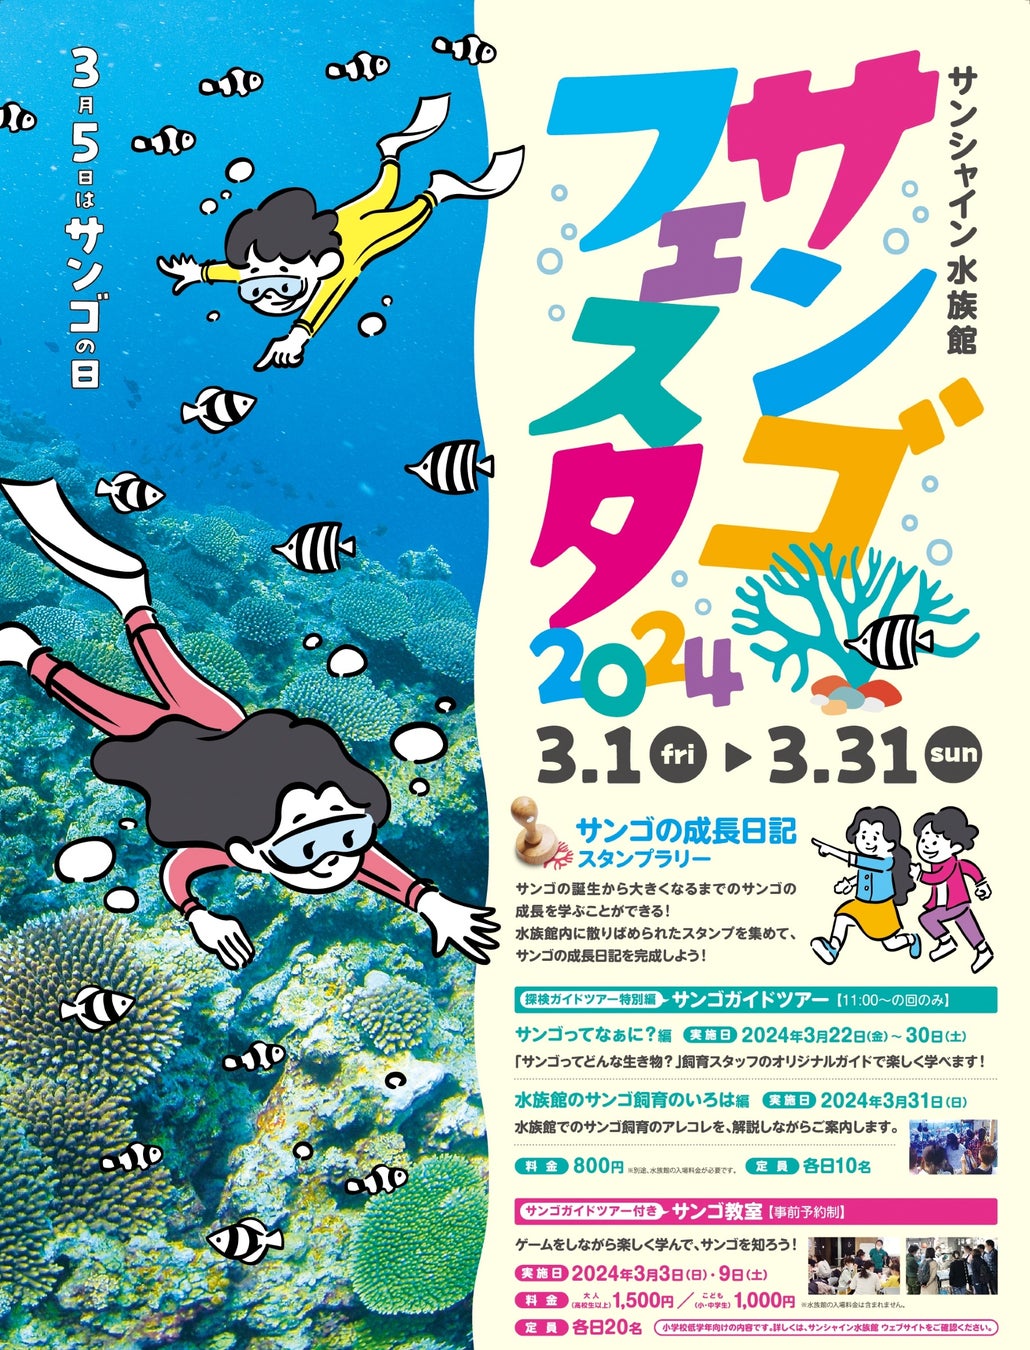 世界最大のイルミネーションと日本最大の音楽噴水ショーによる圧巻のウォーターエンターテインメントエリアが誕生！『ウォーターガーデン』